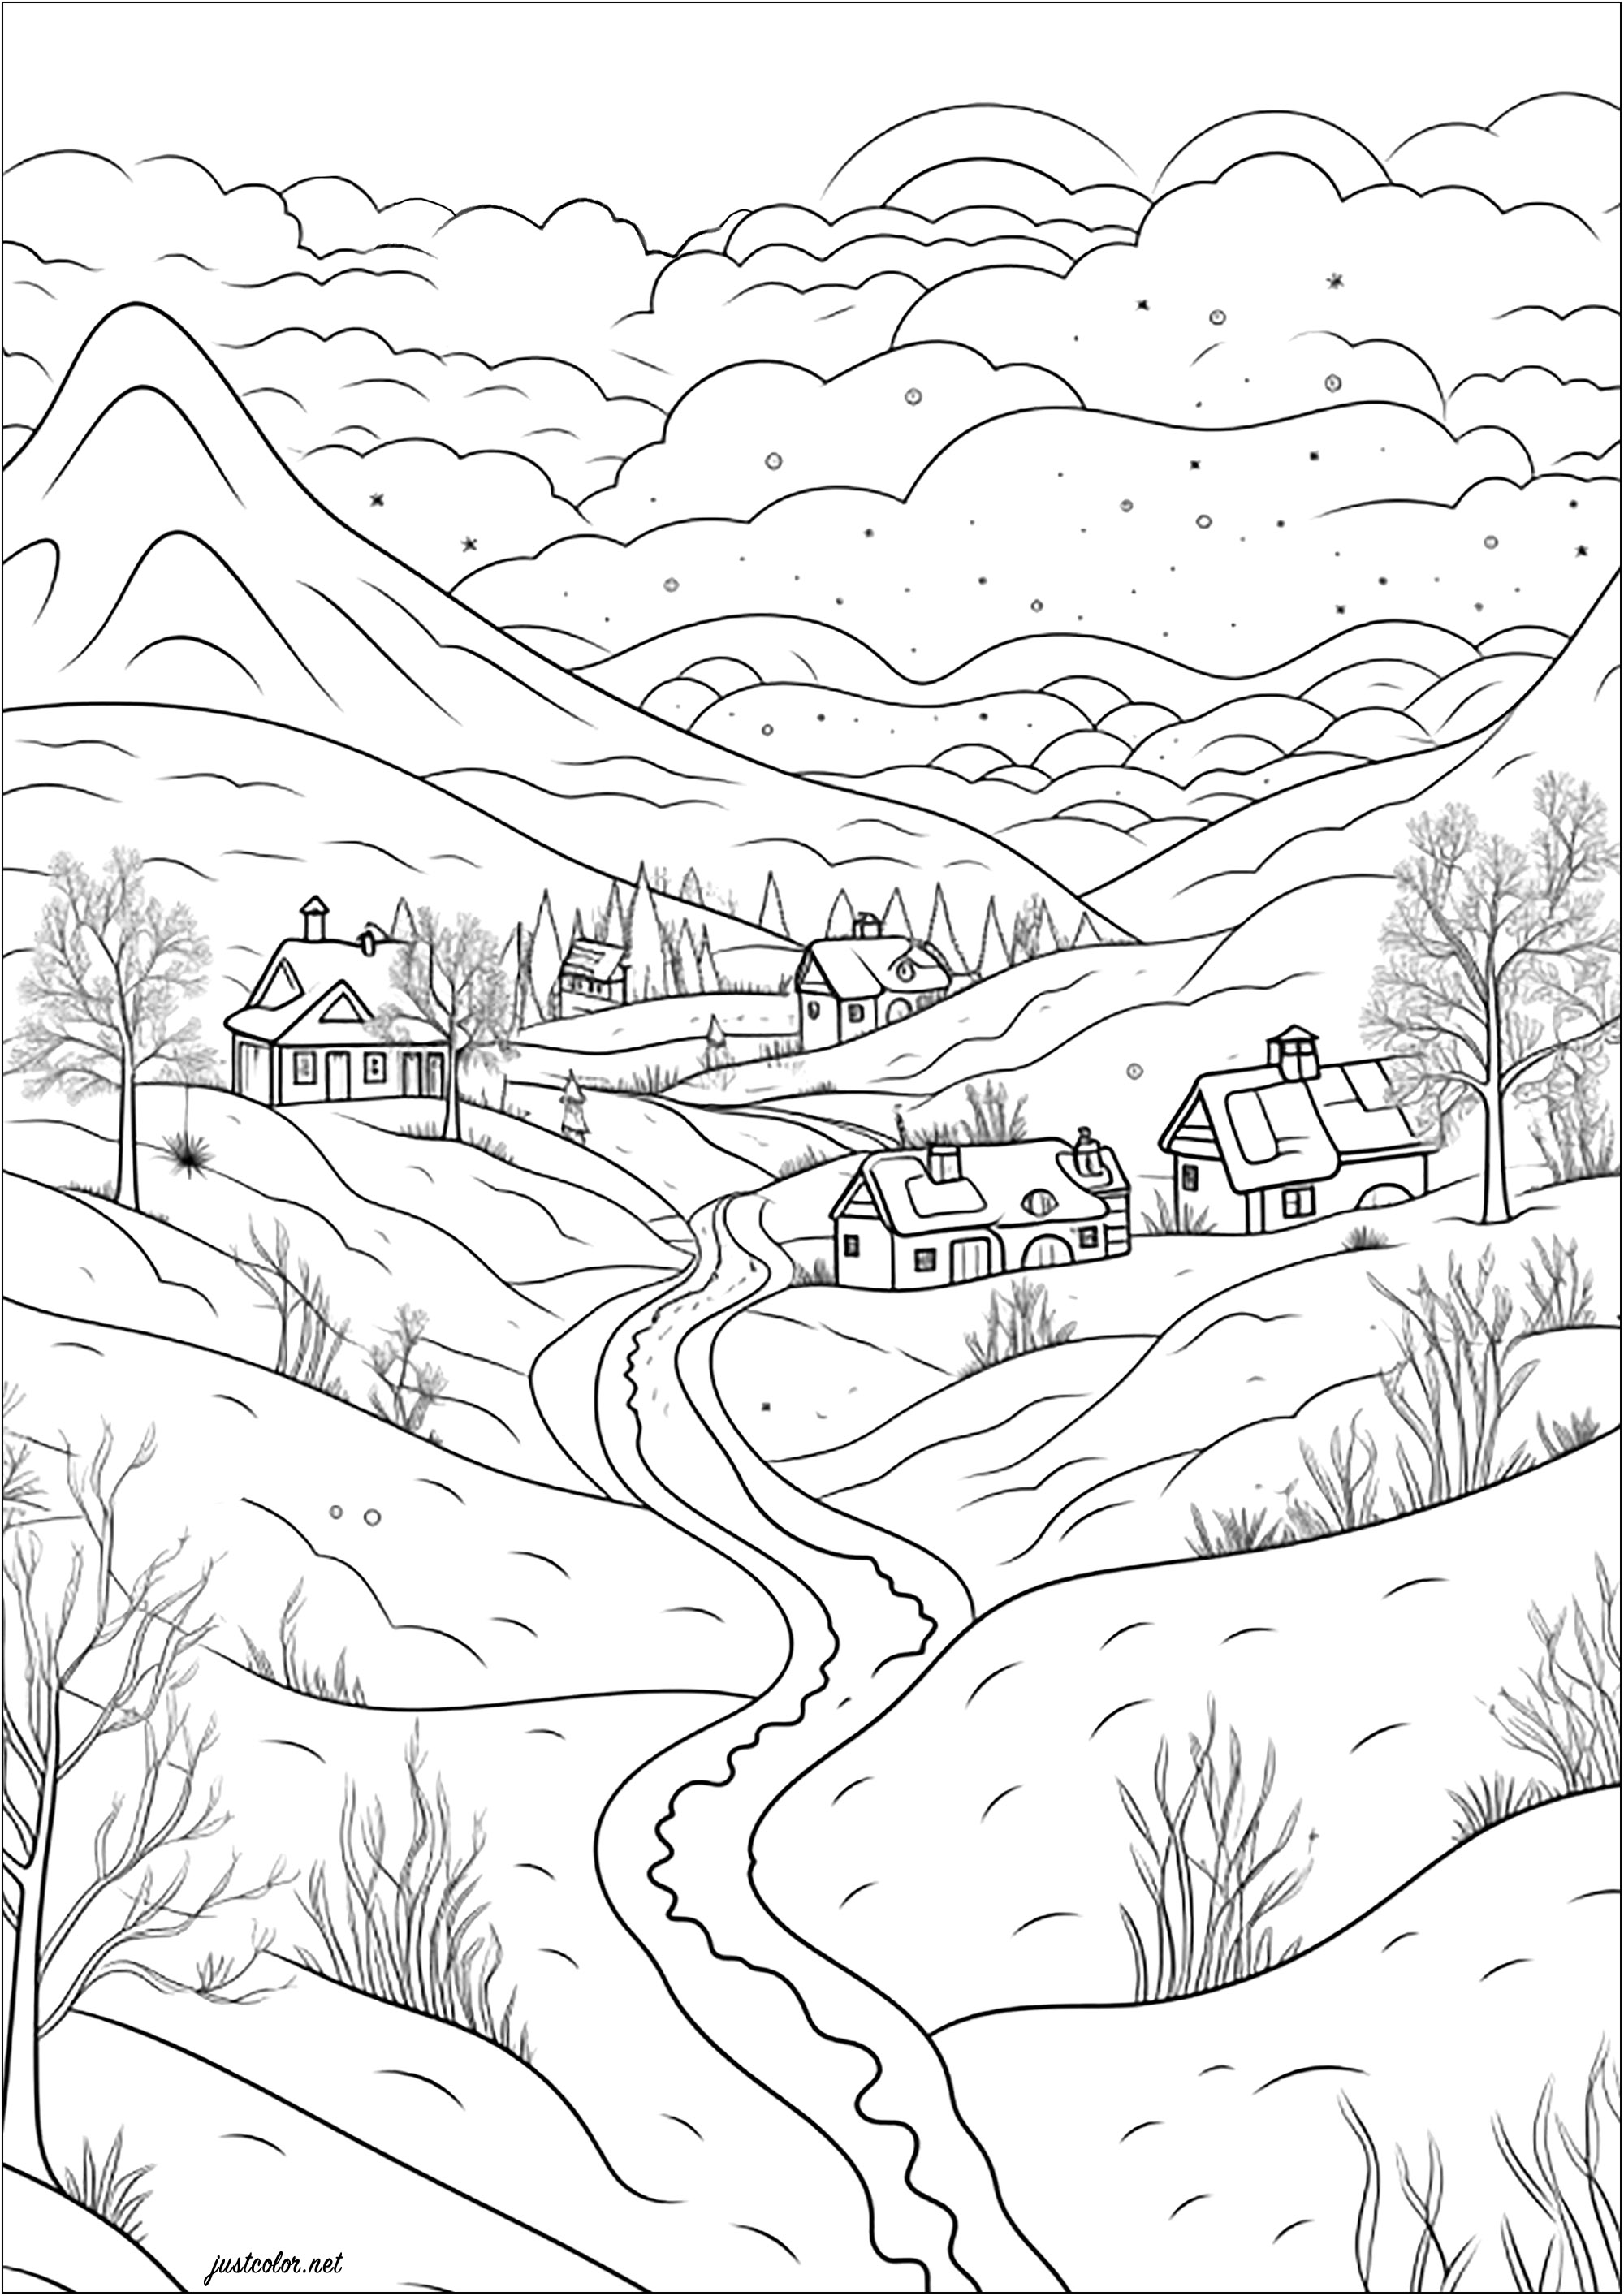 Bonita aldeia nas montanhas. Colorir esta bonita paisagem de neve